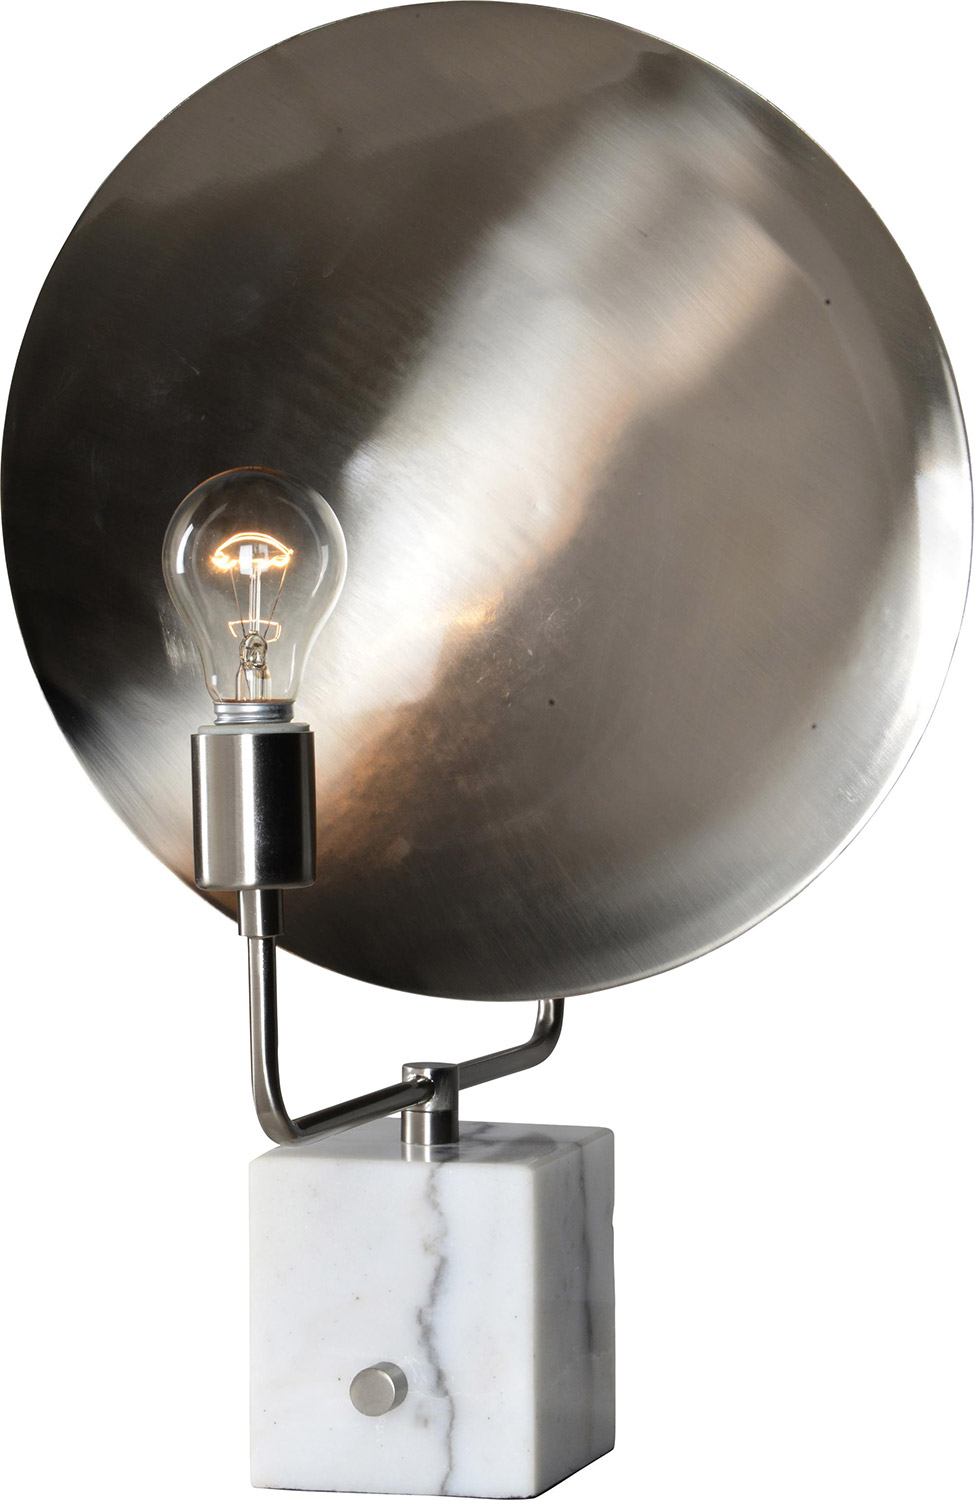 Ren-Wil Aurial Table Lamp - SatinNickel